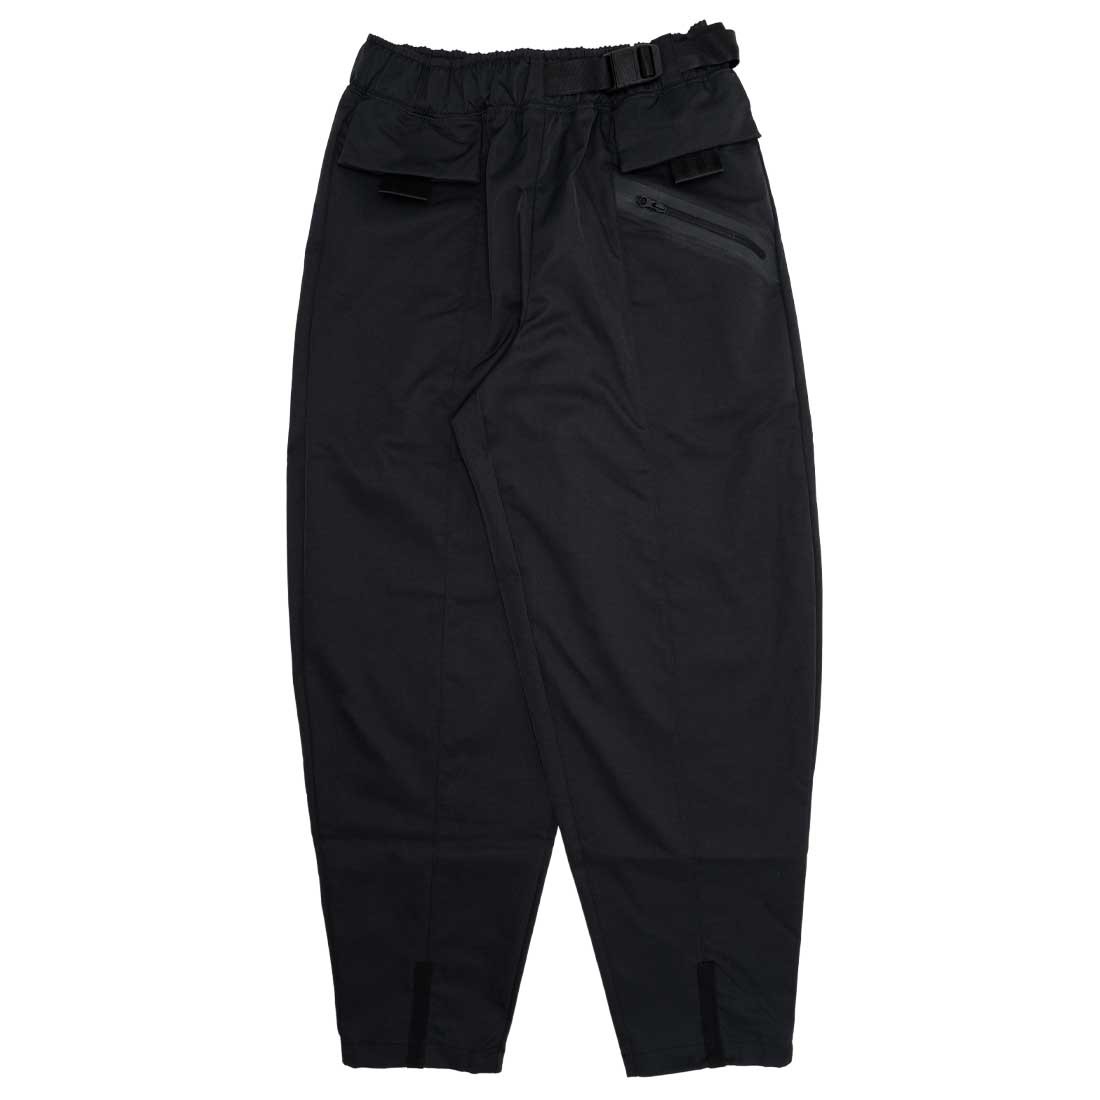  Nike Sportswear Women's Tech Pack Woven Pants (Medium